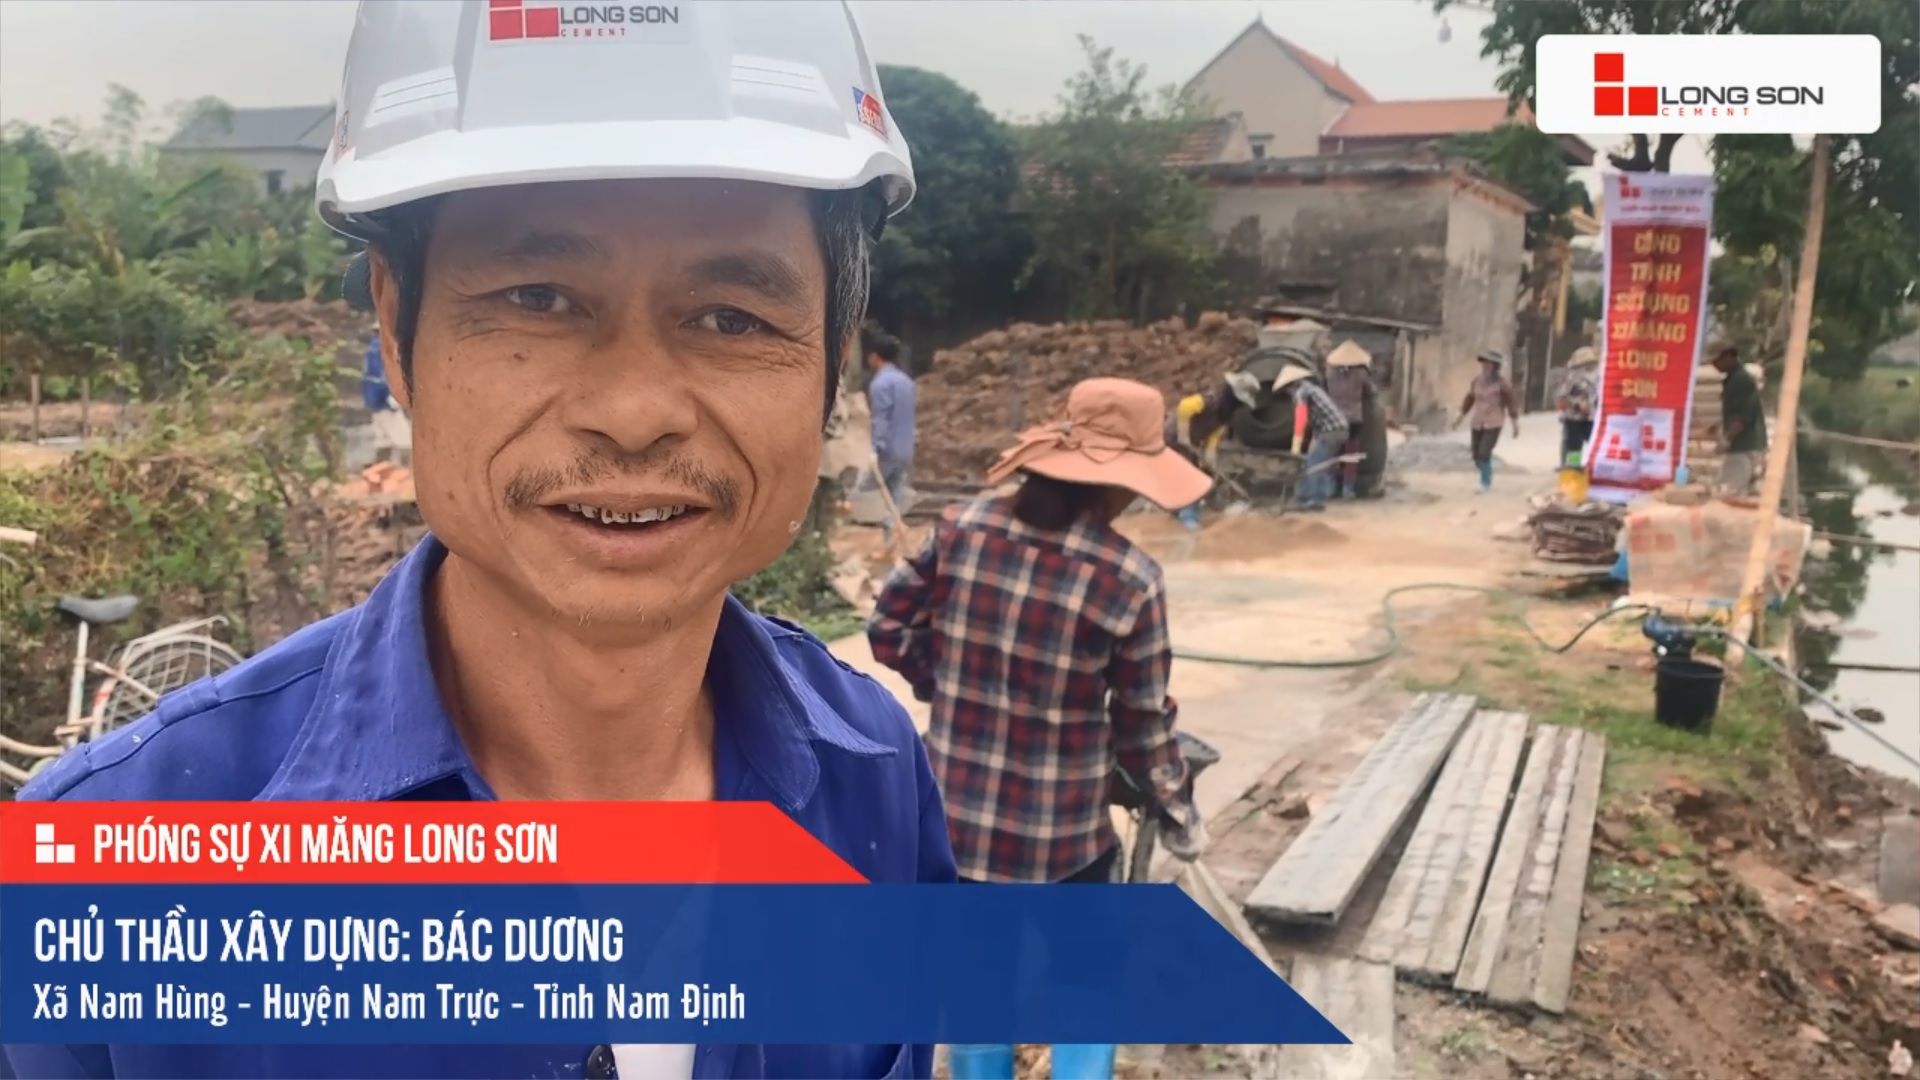 Phóng sự công trình sử dụng Xi măng Long Sơn tại Nam Định 11.11.2020